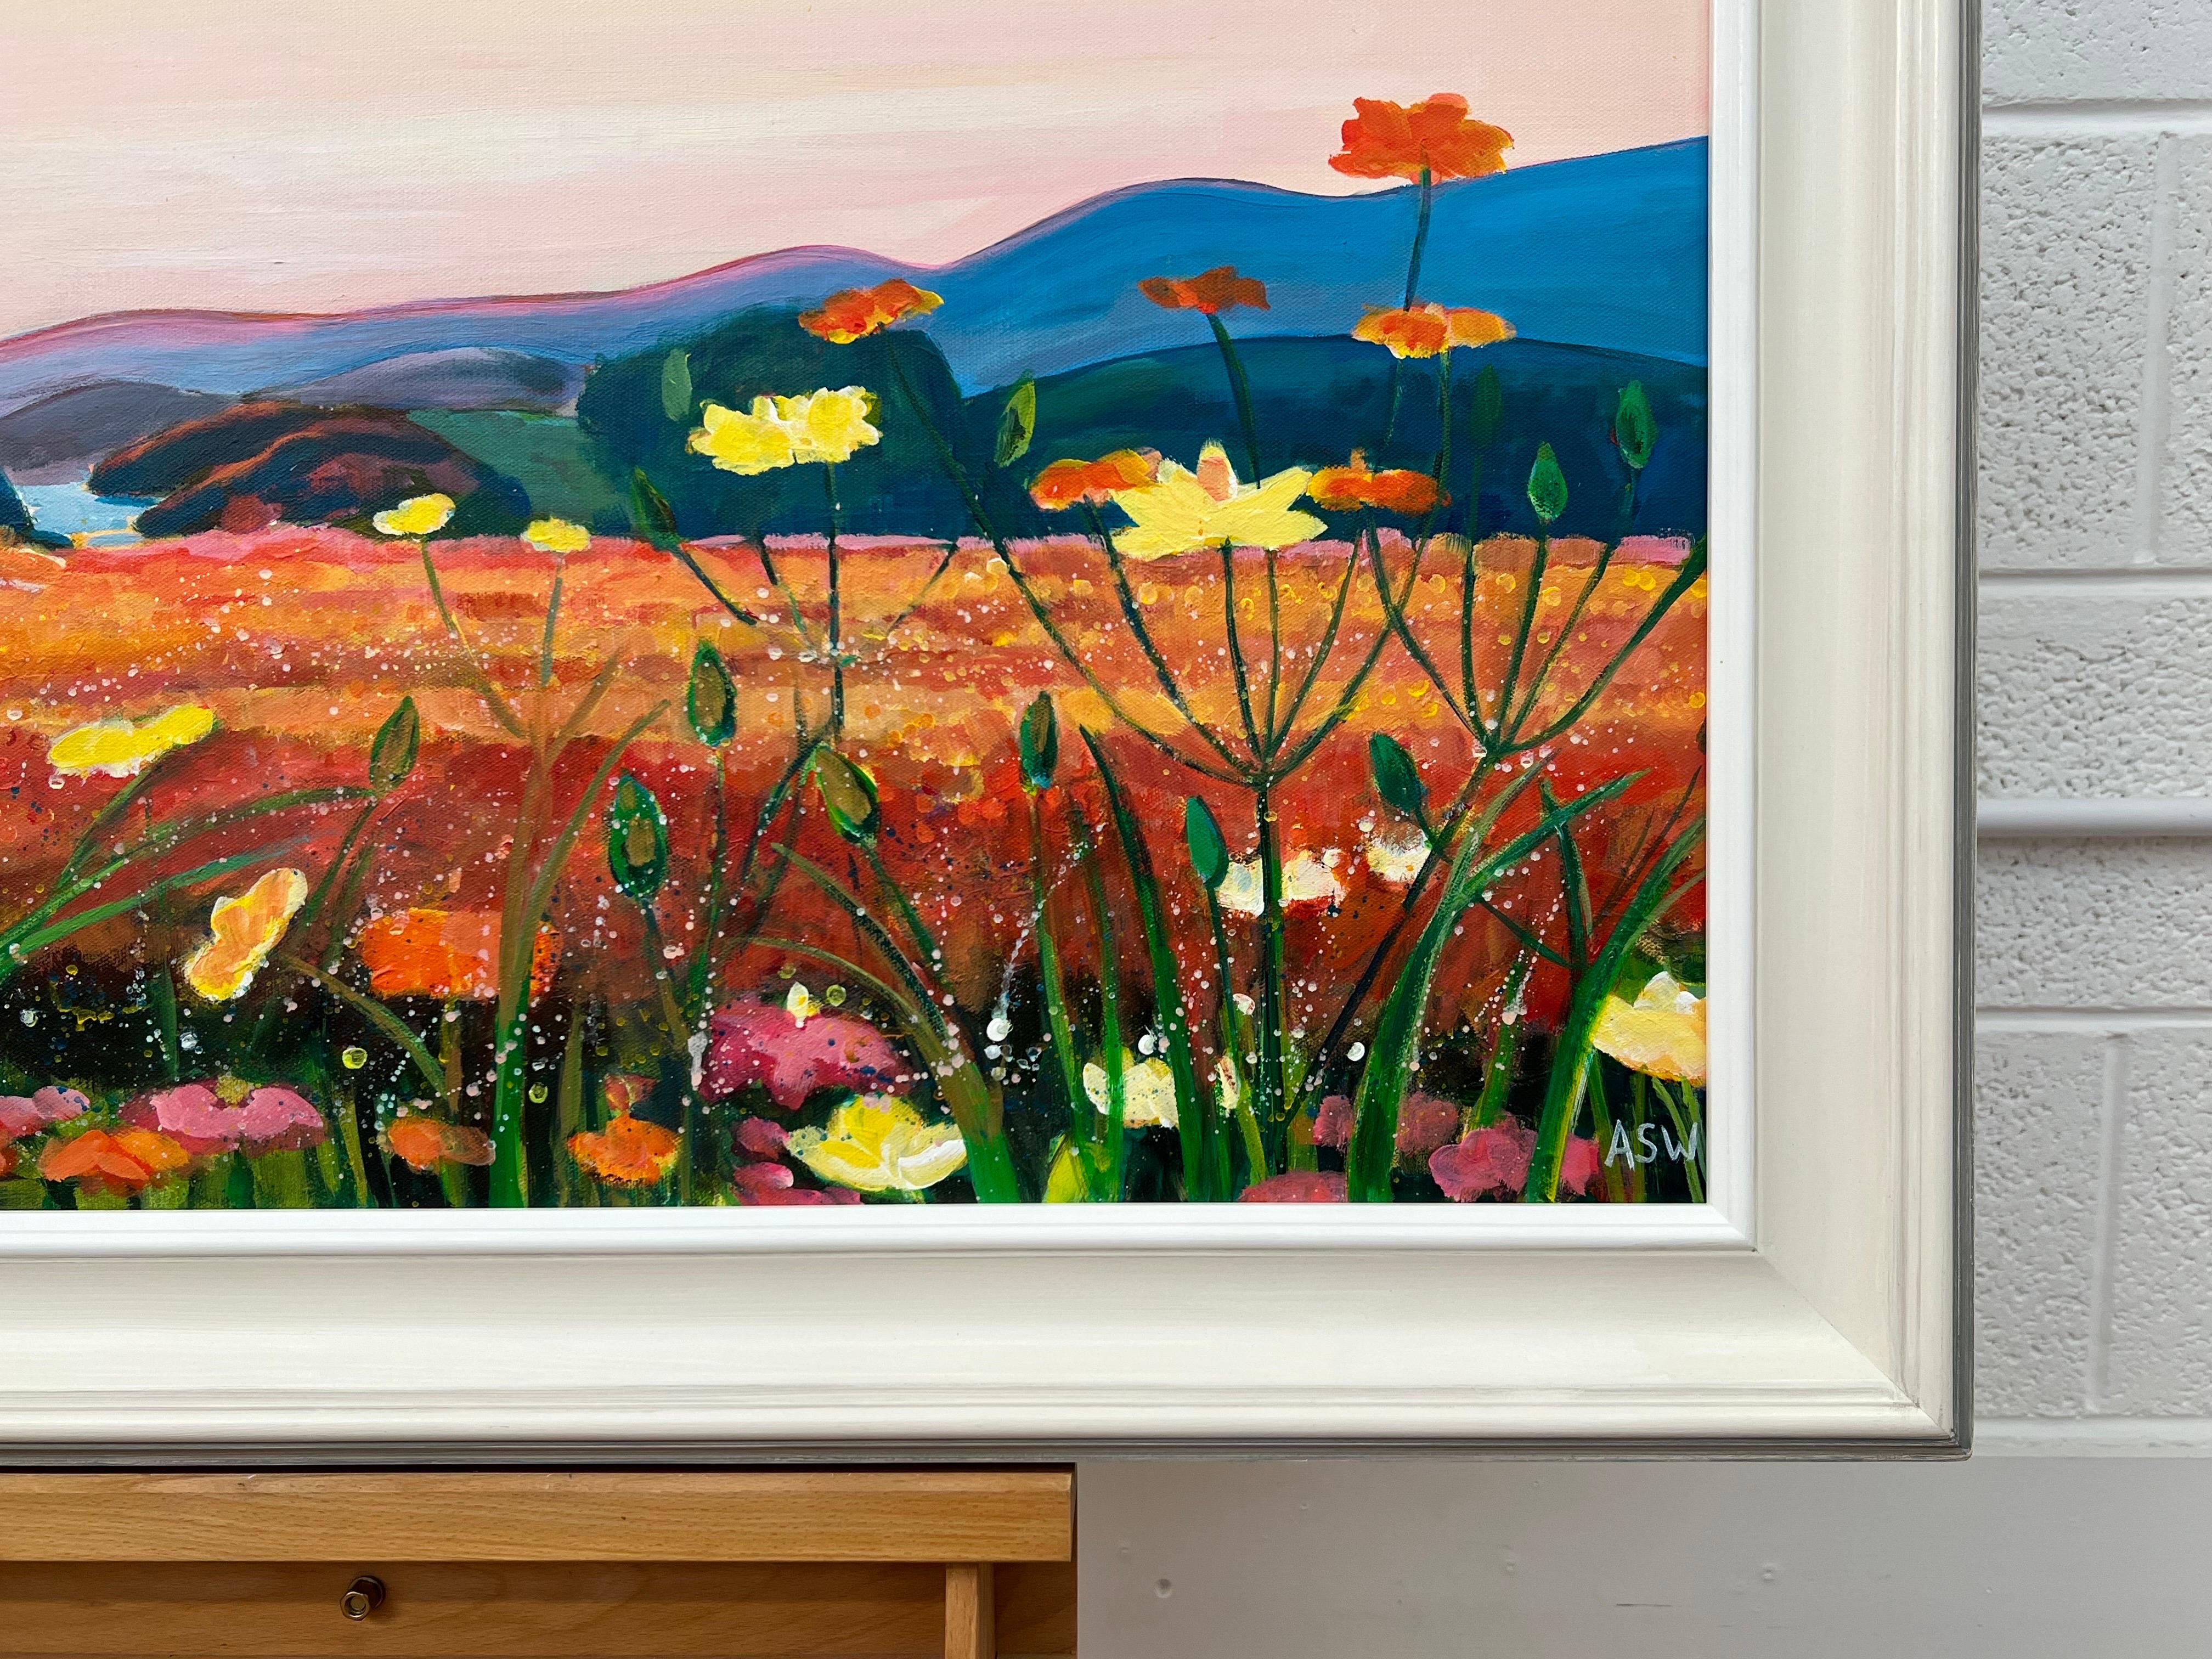 Paysage chaleureux de coucher de soleil espagnol avec des fleurs sauvages par l'artiste britannique contemporaine, Angela Wakefield. 

L'œuvre d'art mesure 36 x 24 pouces
Le cadre mesure 42 x 30 pouces 

Présenté dans une moulure Frinton blanc cassé